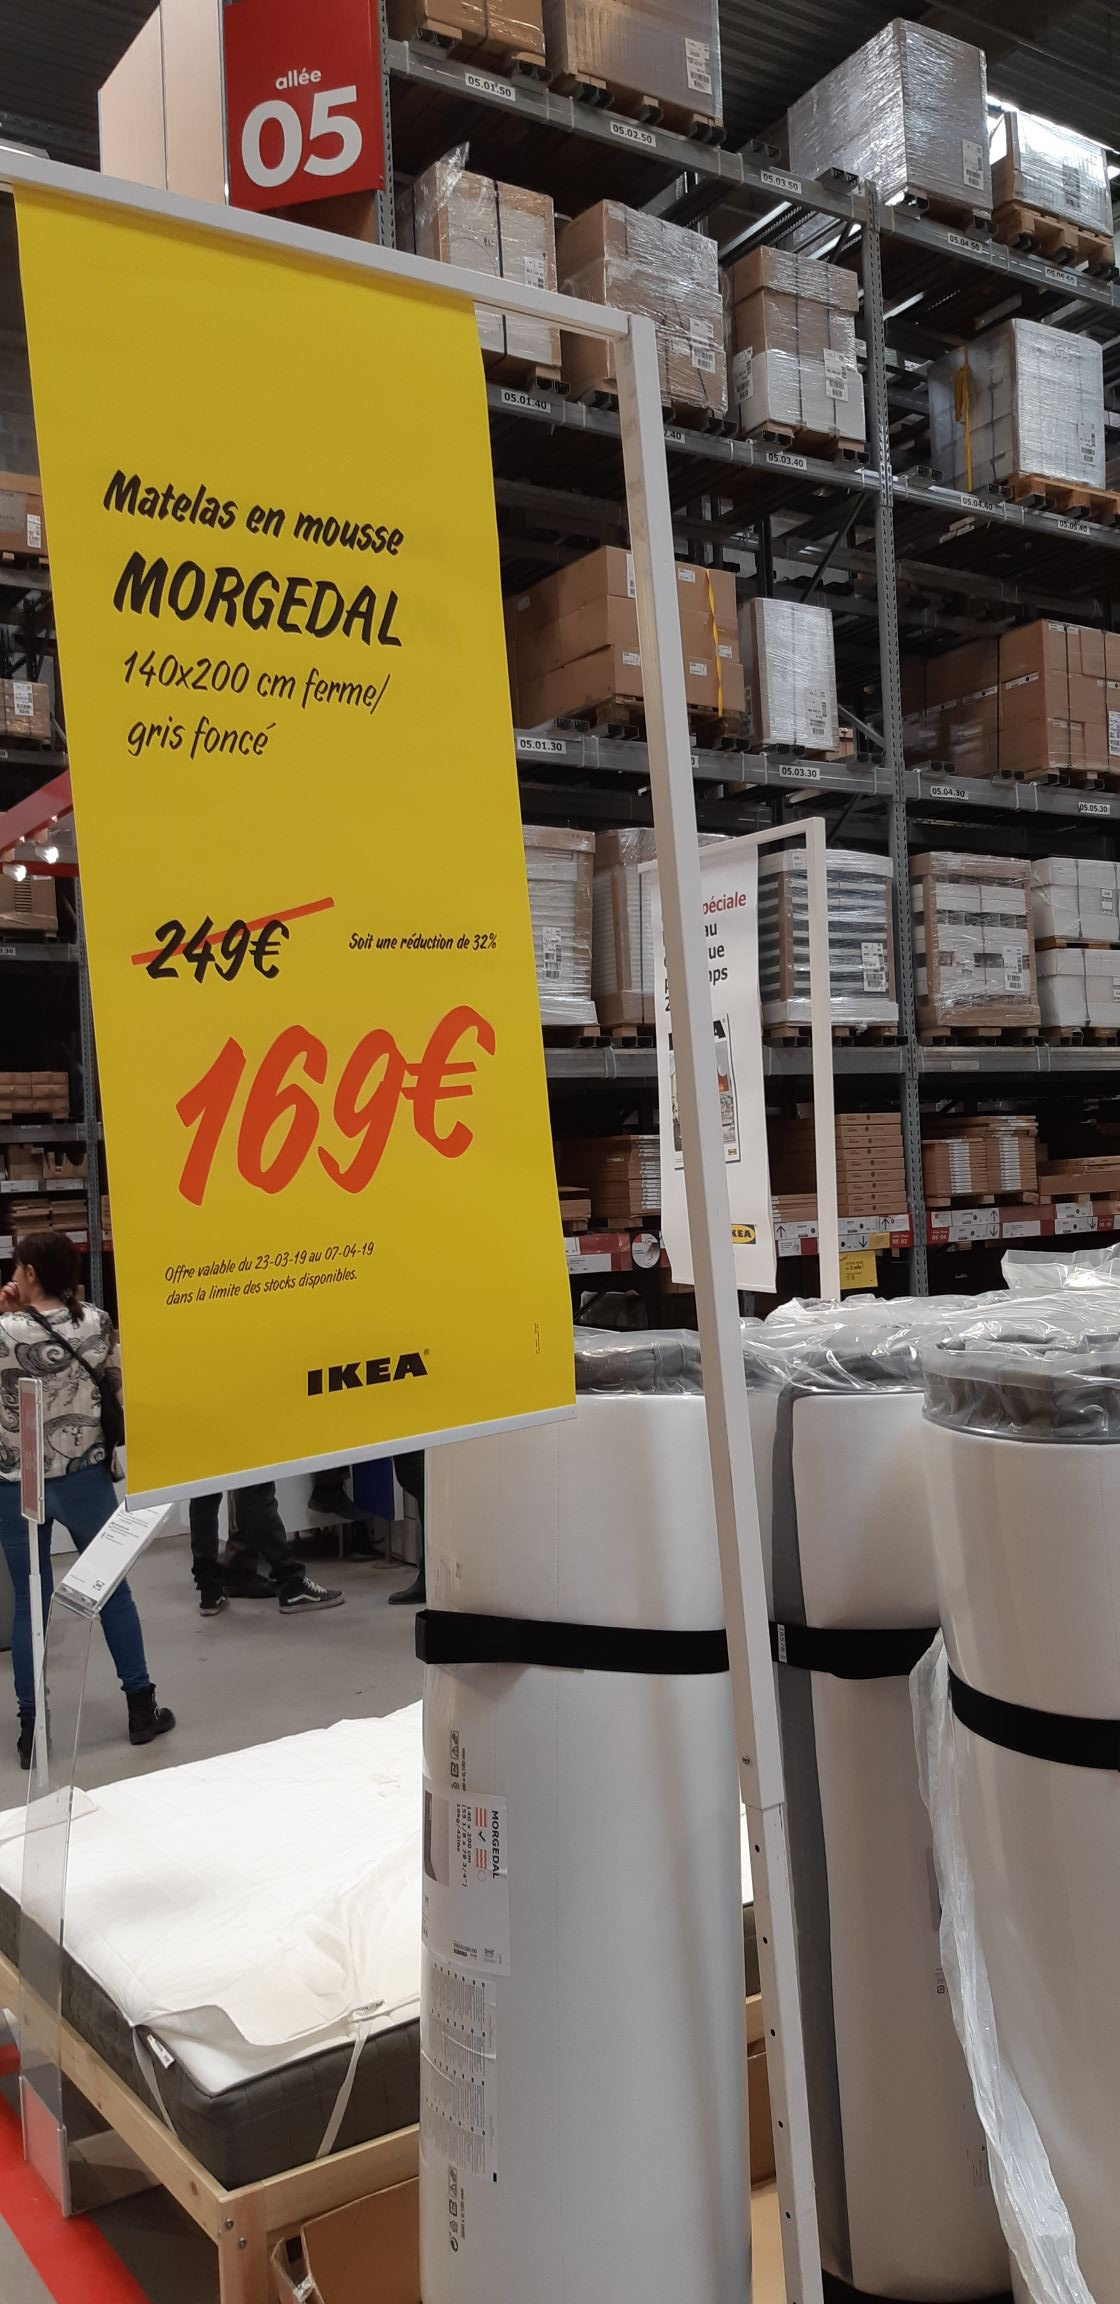 Matelas Ikea Morgedal Ferme 140x200 Cm Gris Fonce Dealabs Com